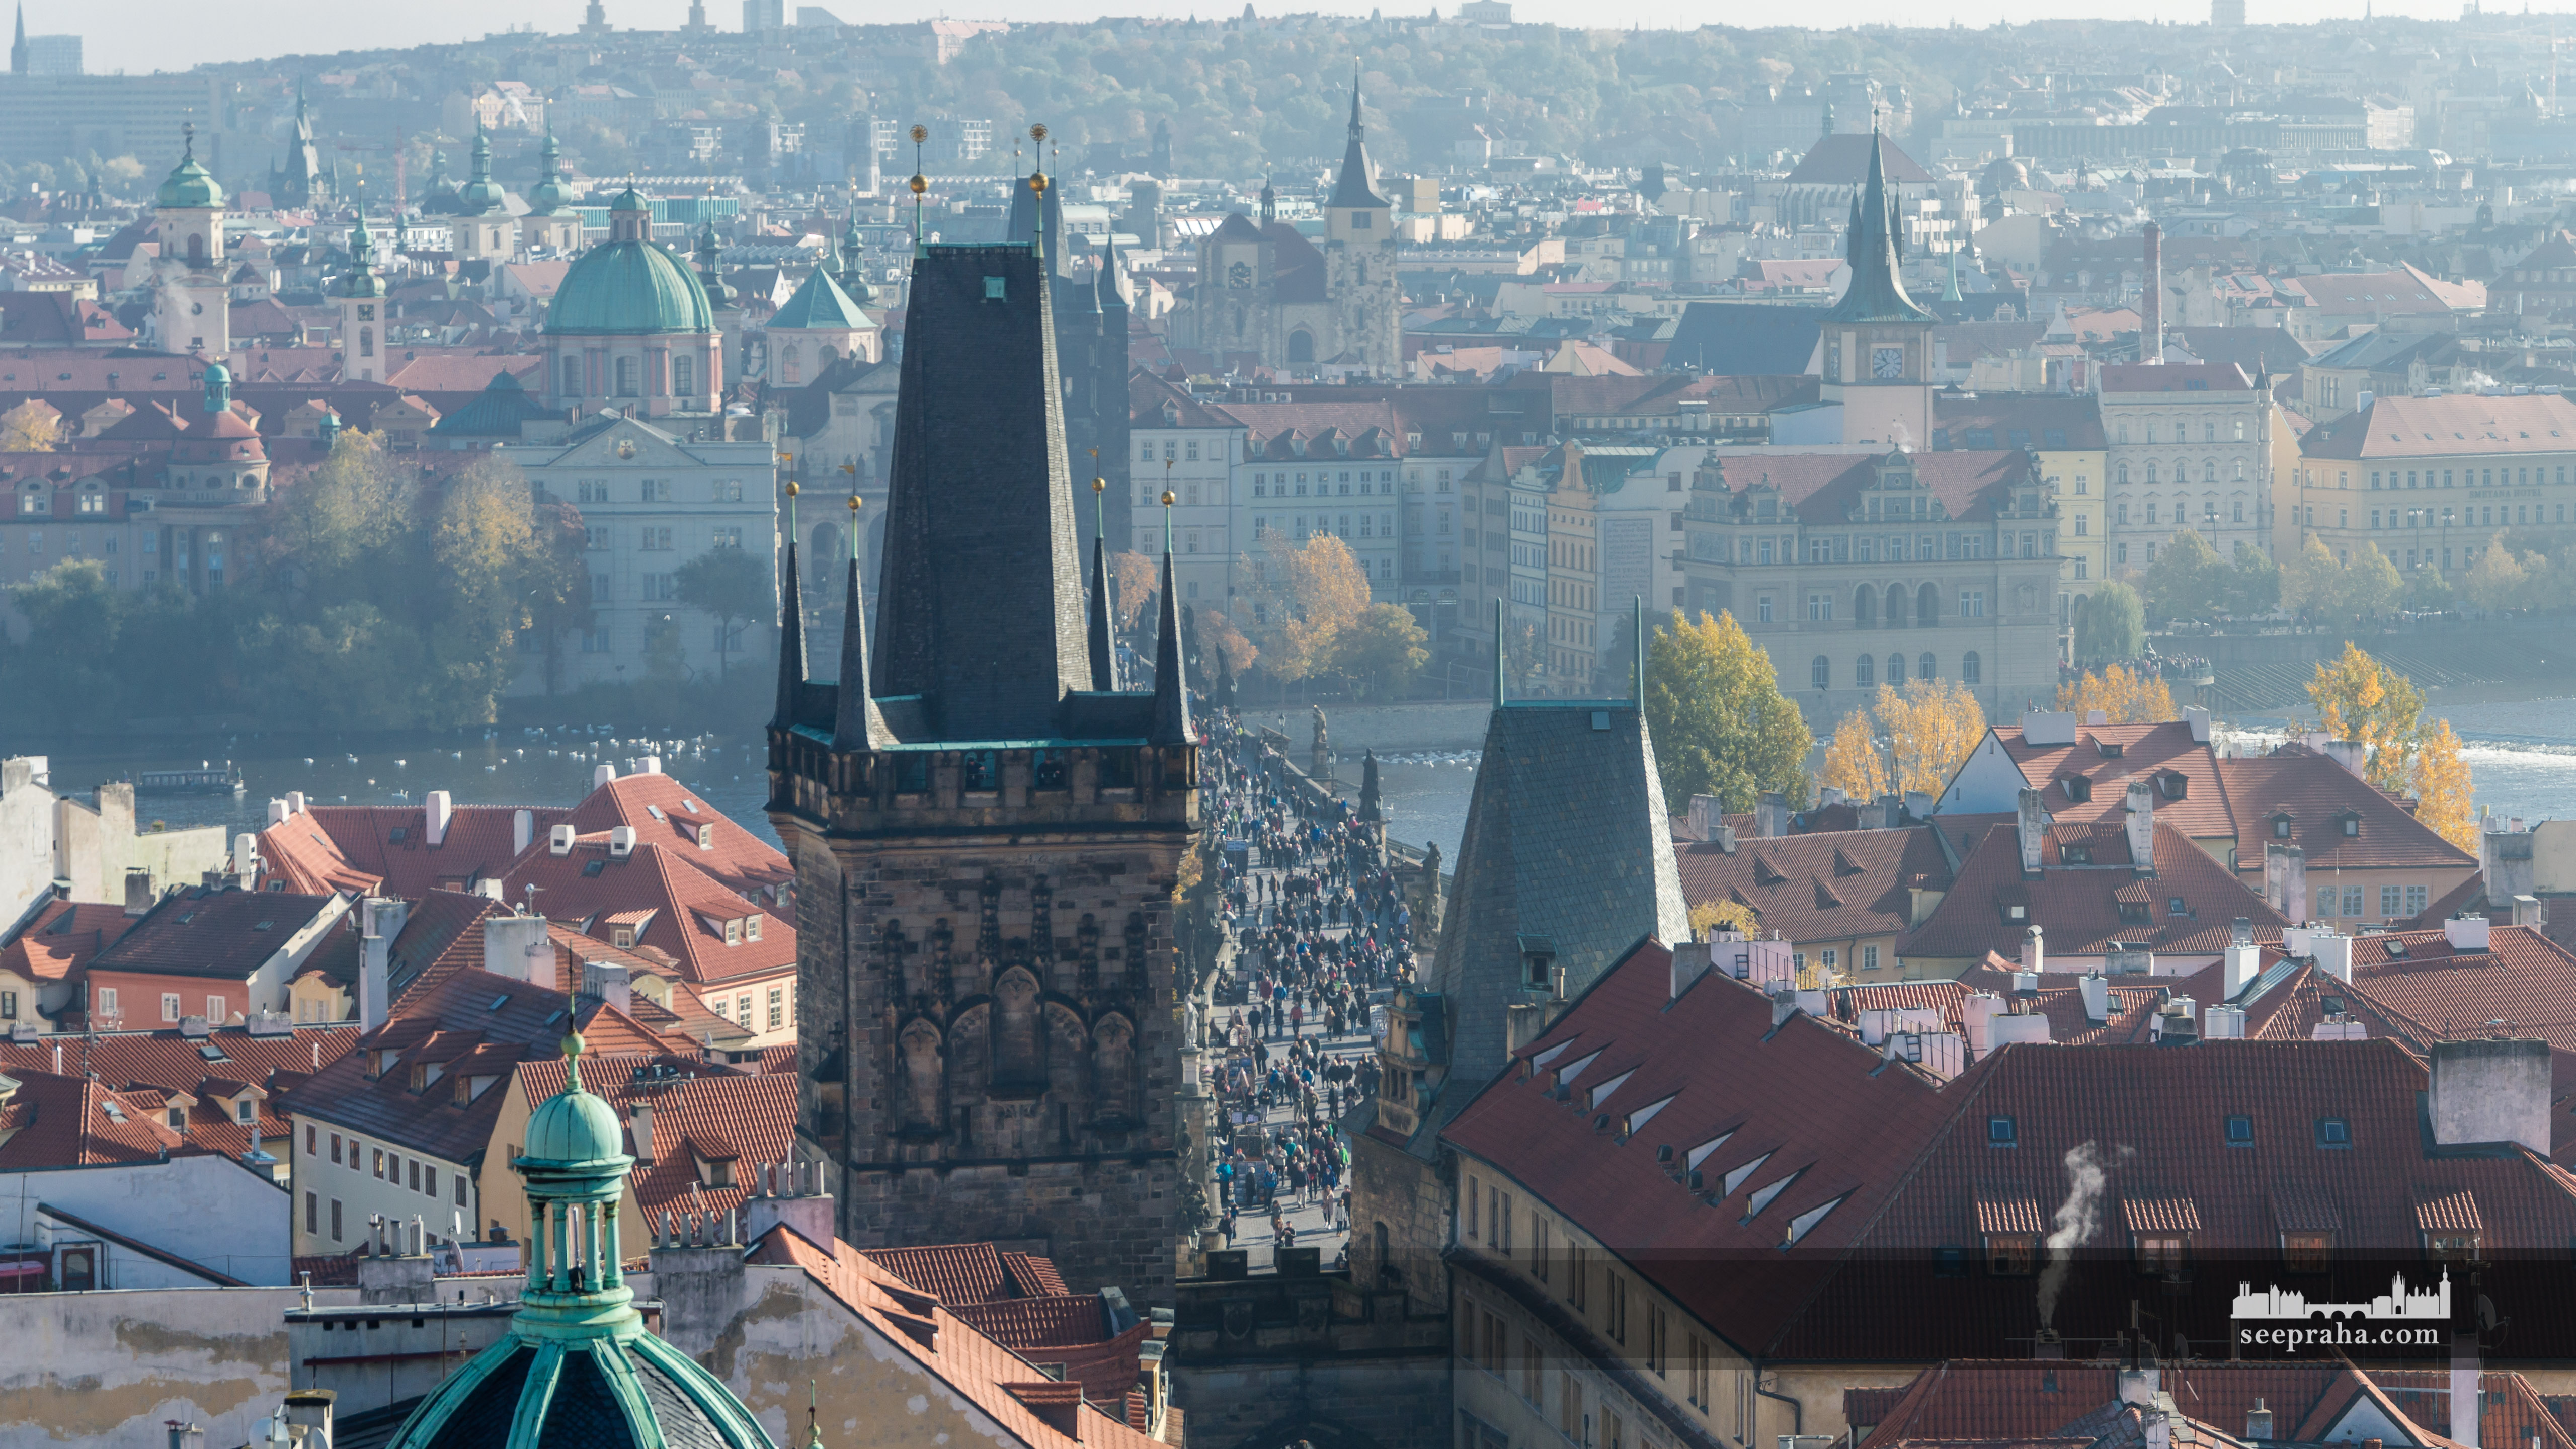 Výhled na Karlův most z věže kostela svatého Mikuláše, Praha, Česko